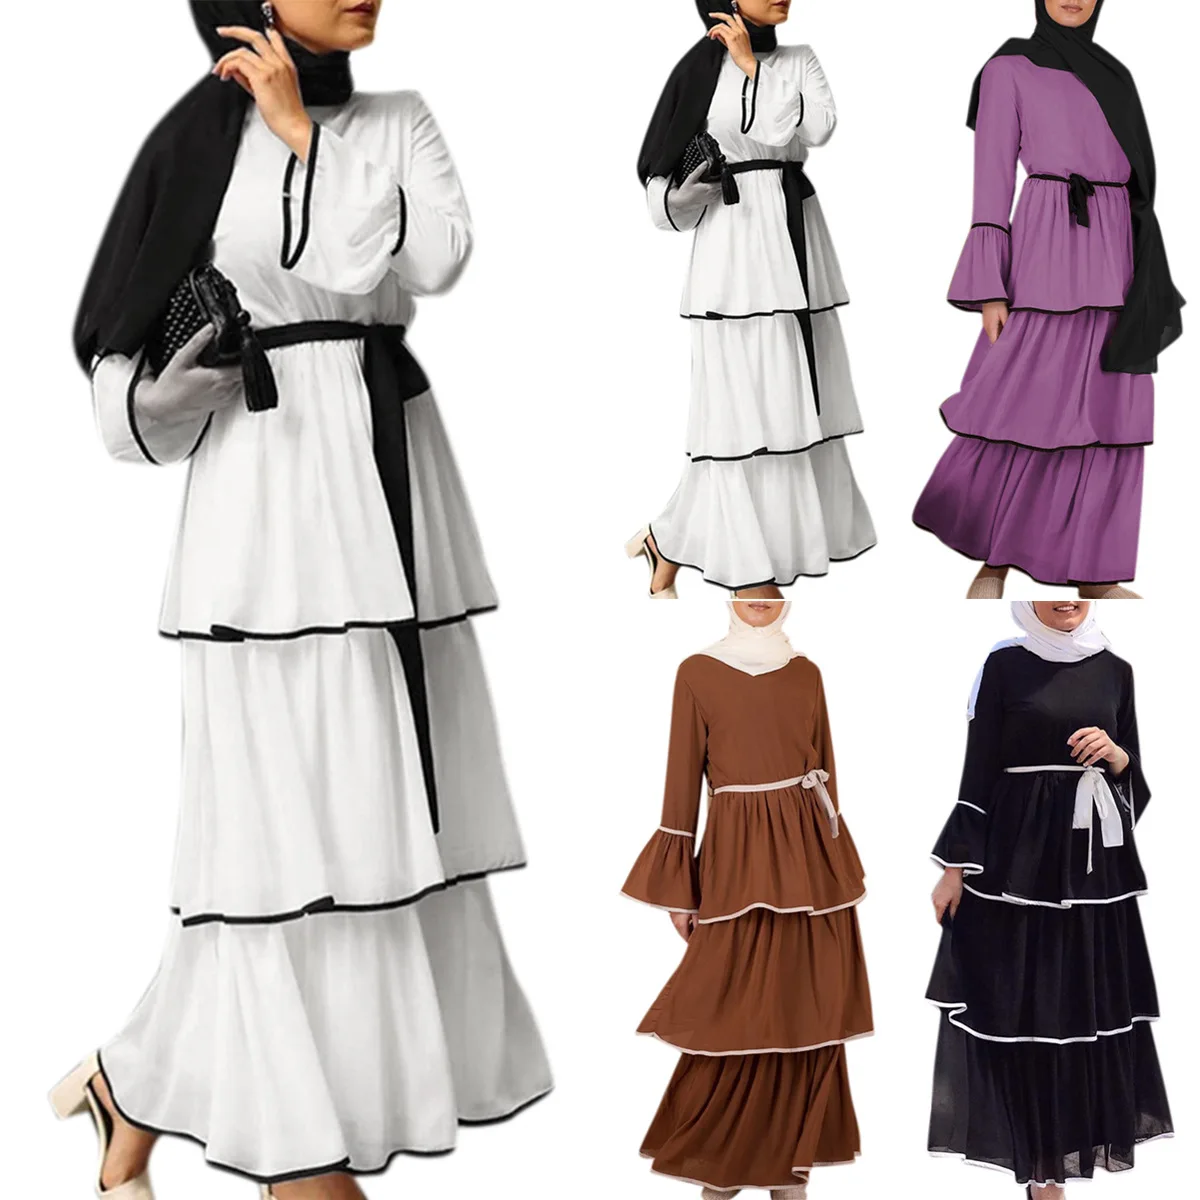 Мусульманское многослойное платье макси с длинным рукавом, вечернее платье в мусульманском стиле, одежда для вечеринки, черное шифоновое п...